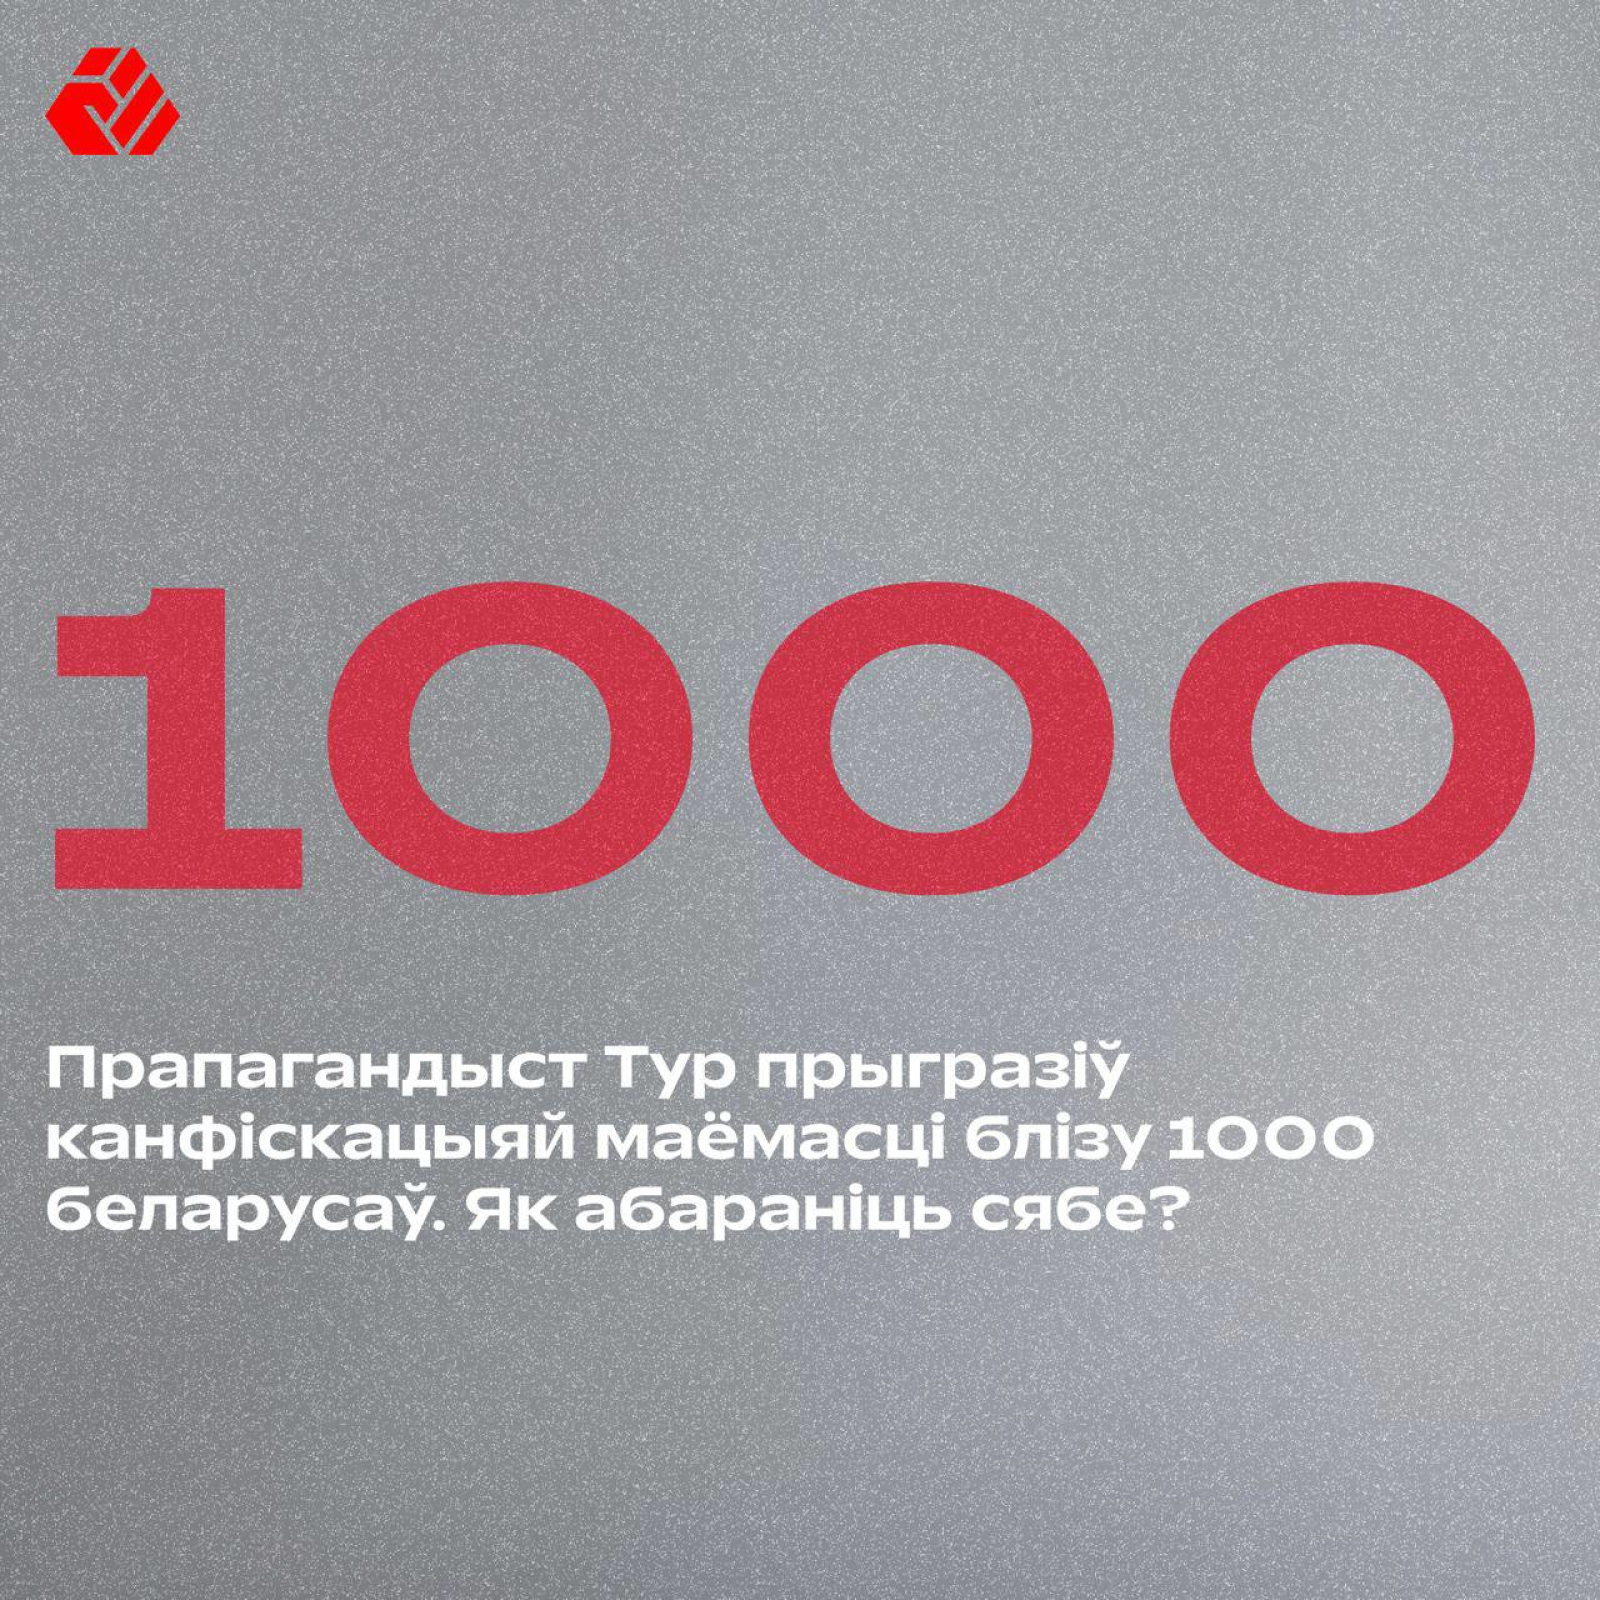 Пропагандист Тур пригрозил конфискацией имущества около 1000 беларусам. Как защитить себя?